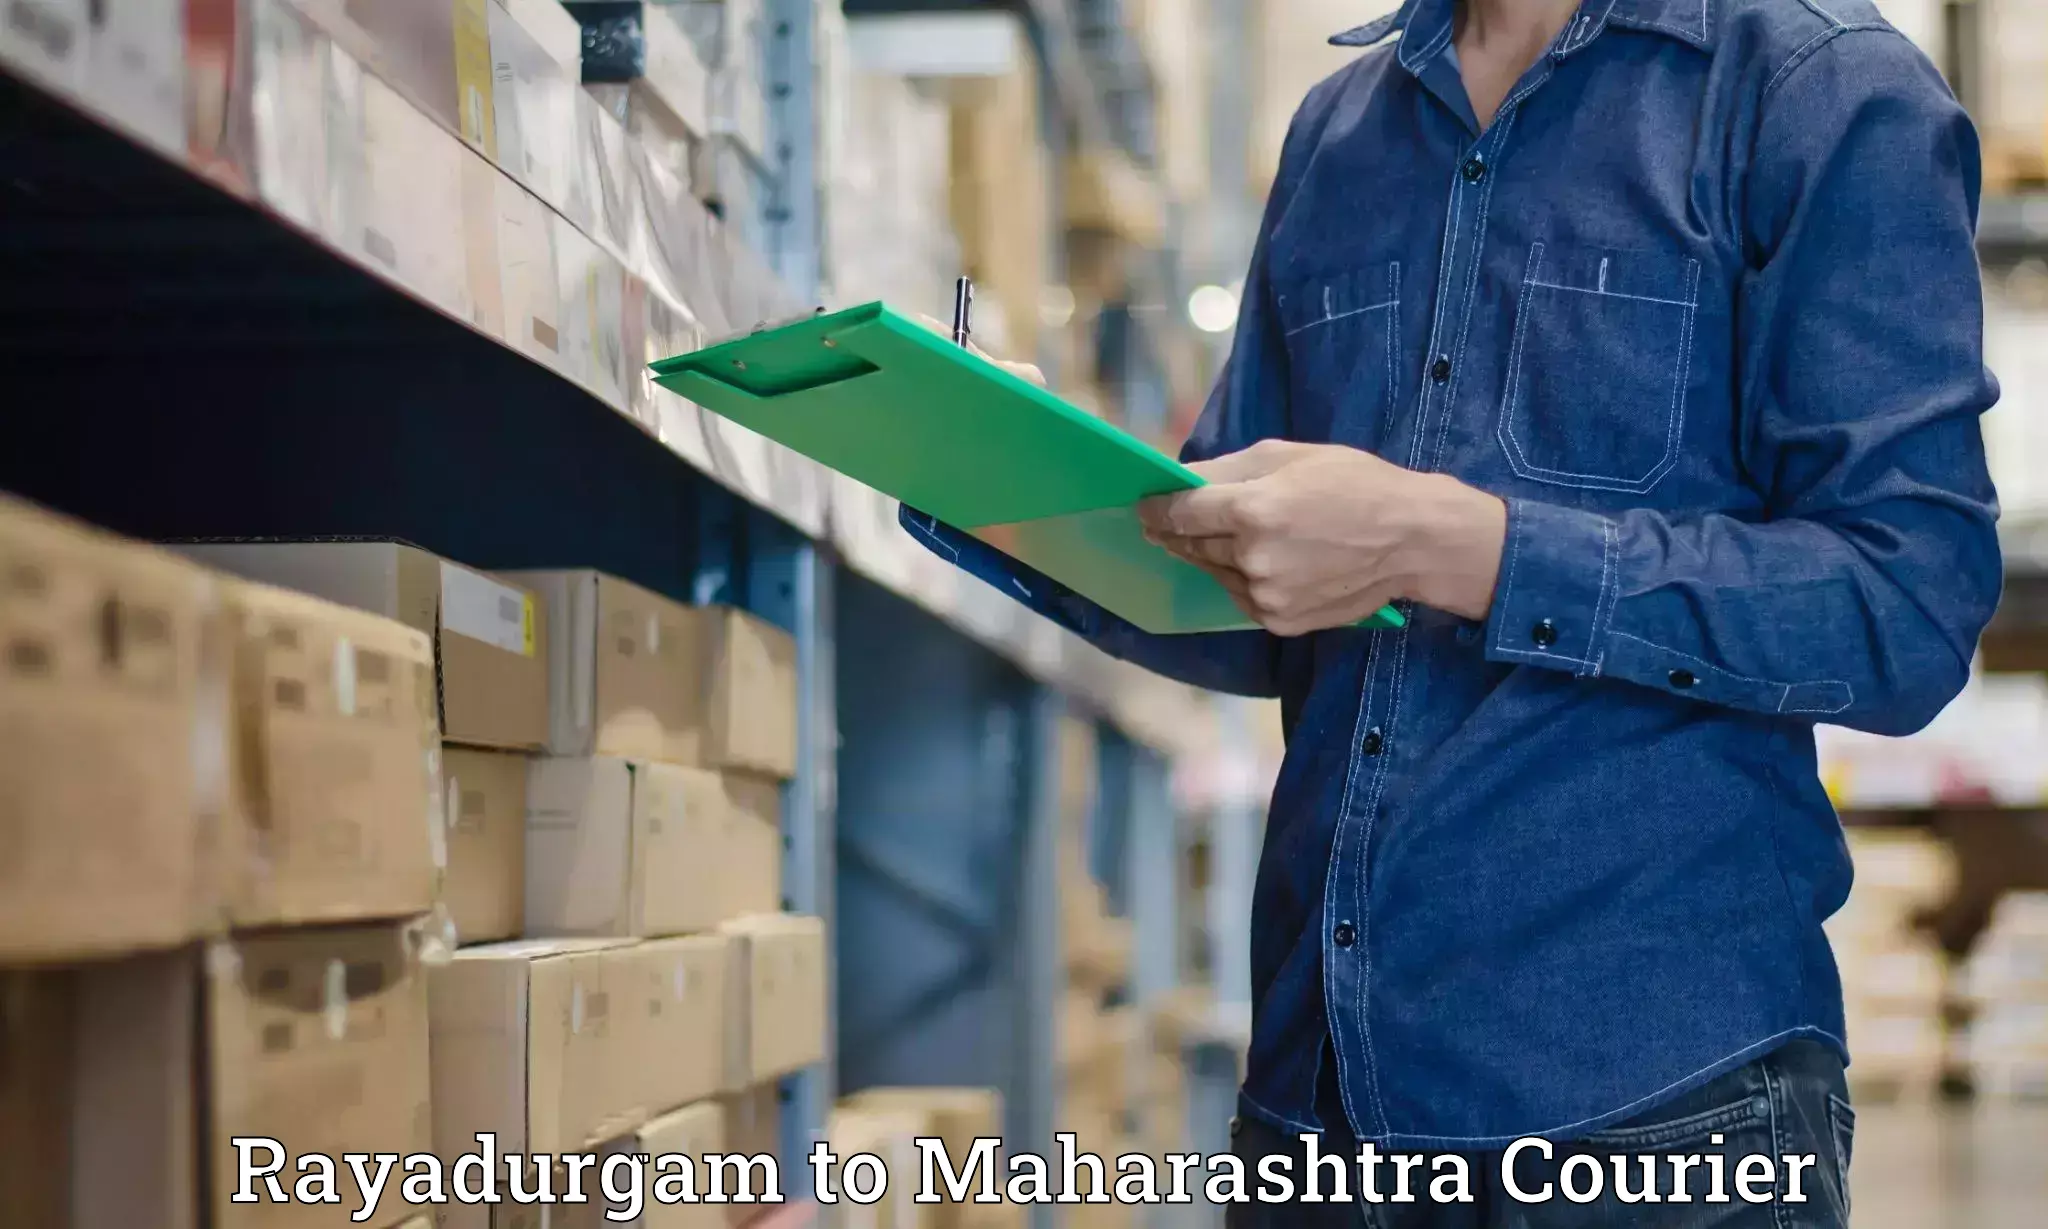 Baggage shipping experience Rayadurgam to Maharashtra